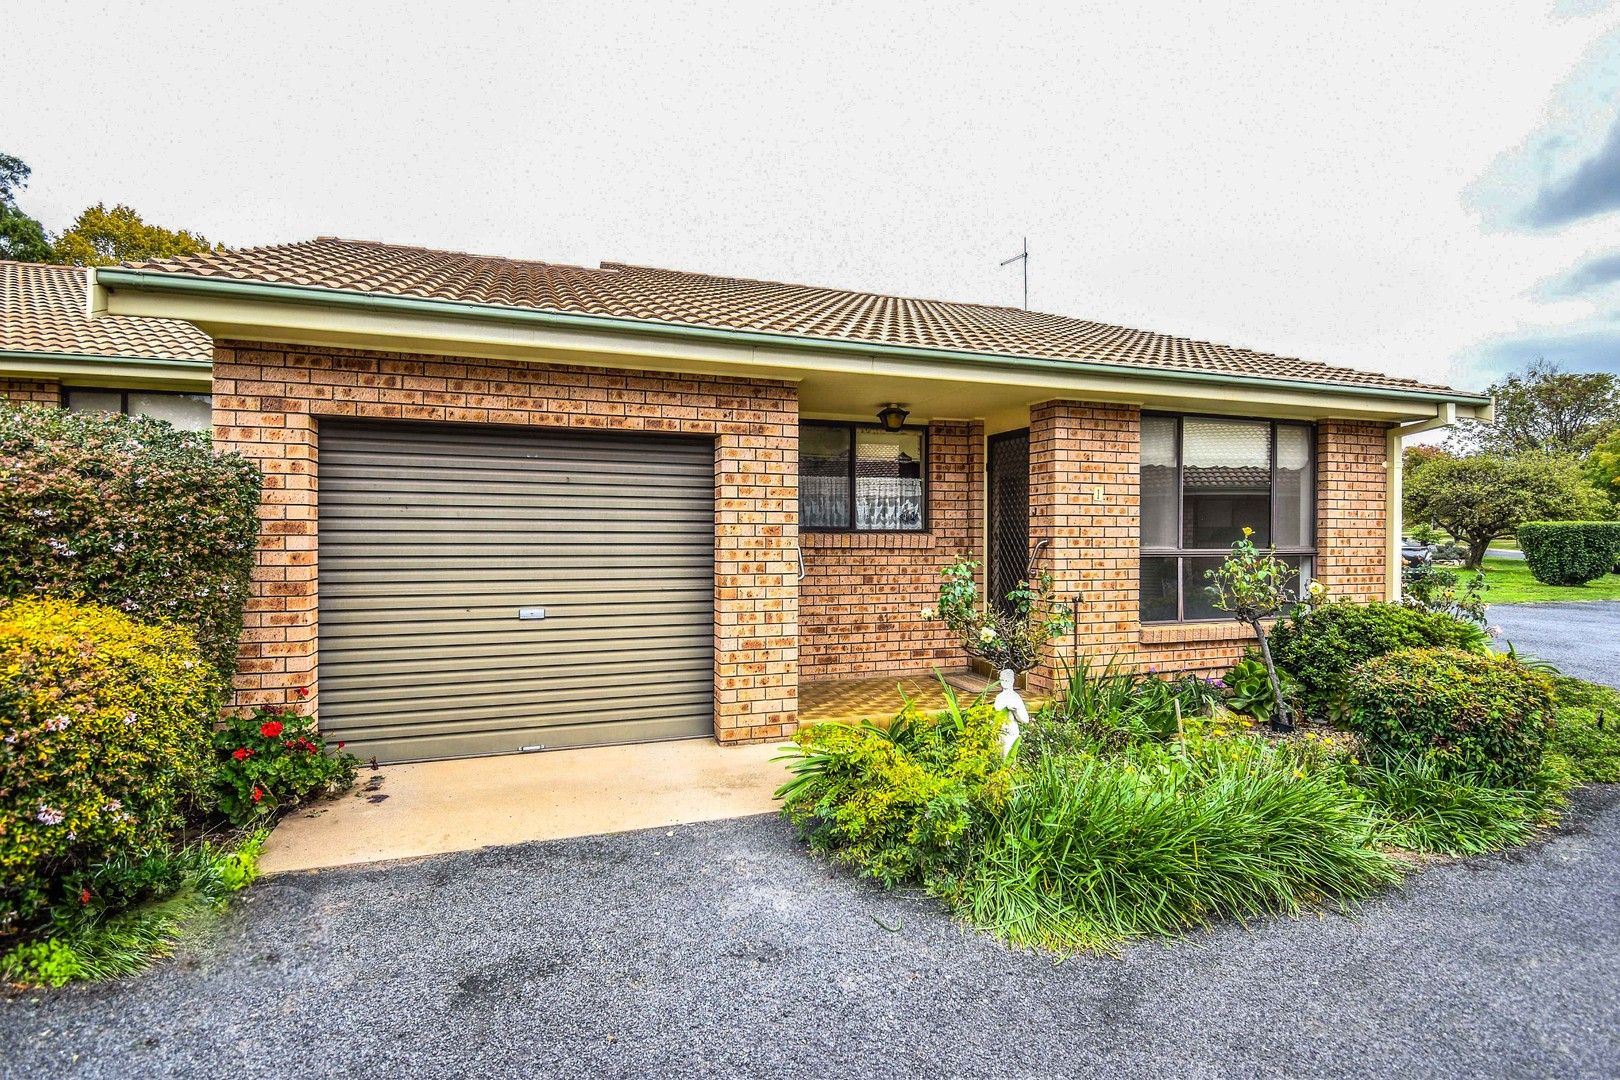 2 bedrooms Apartment / Unit / Flat in 1/9 Amangu Close ORANGE NSW, 2800